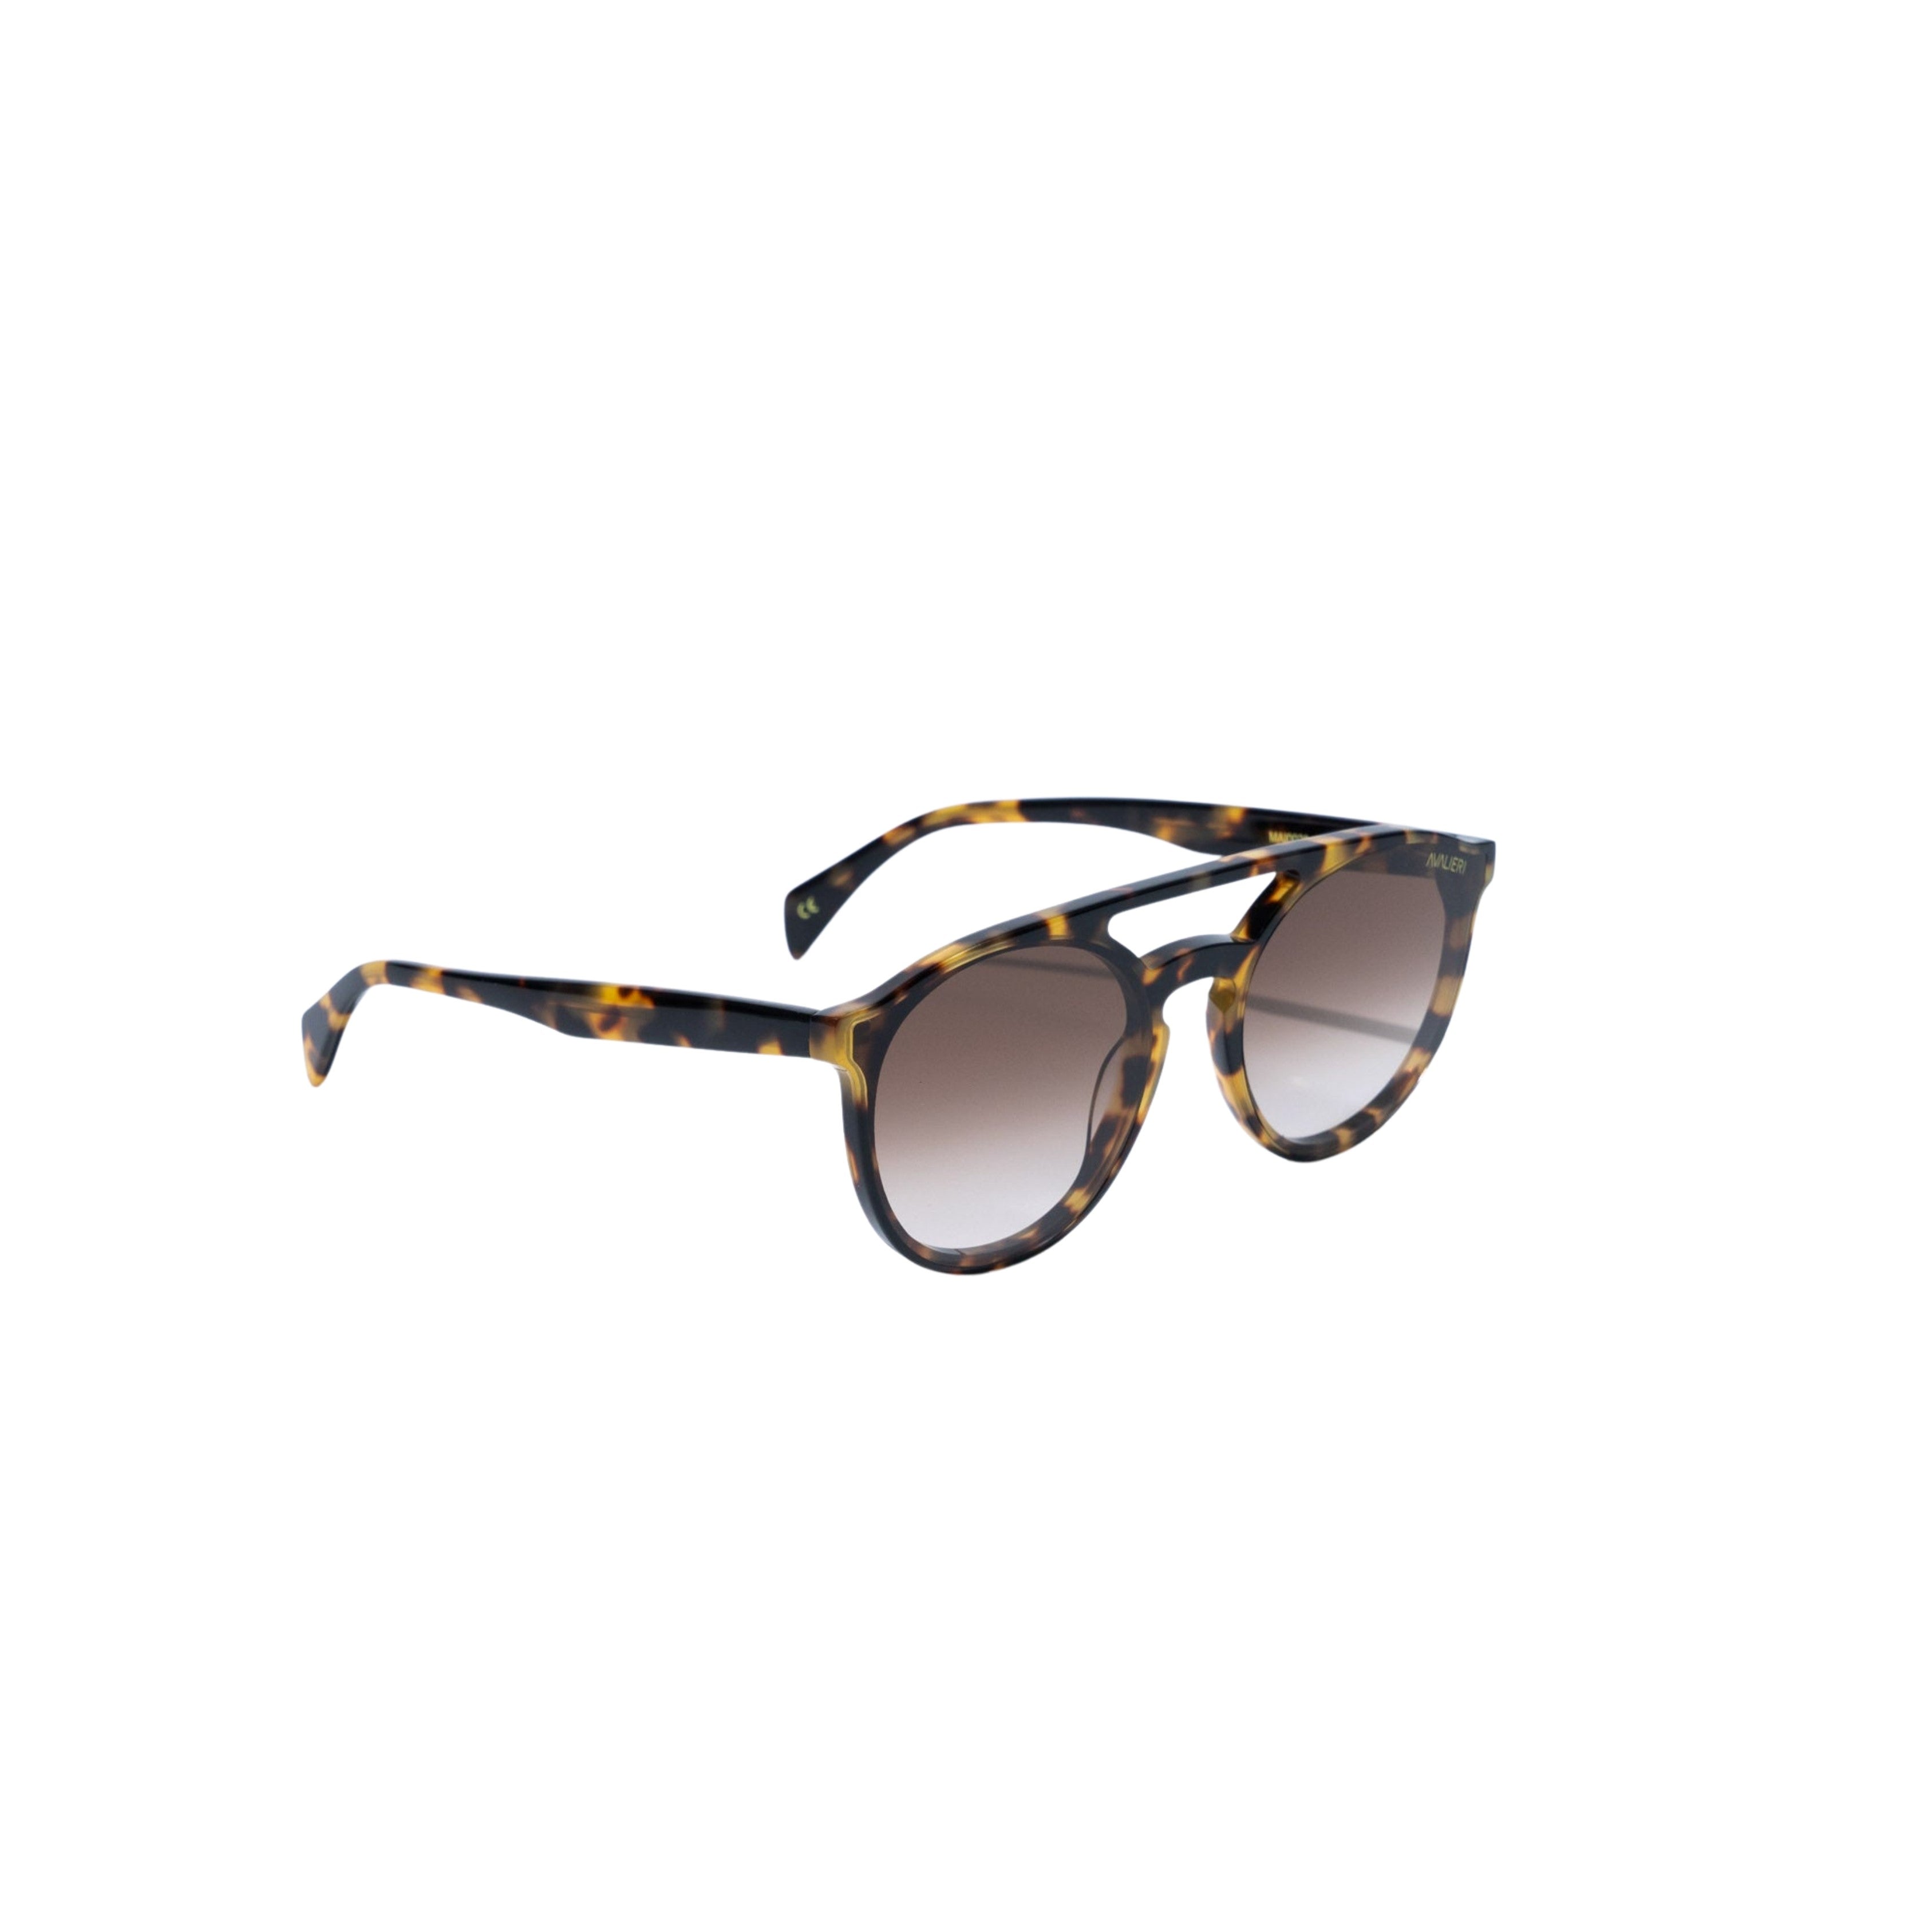 نظارات شمسية باللون البني للرجال والنساء من أفاليري - AVSG-0005